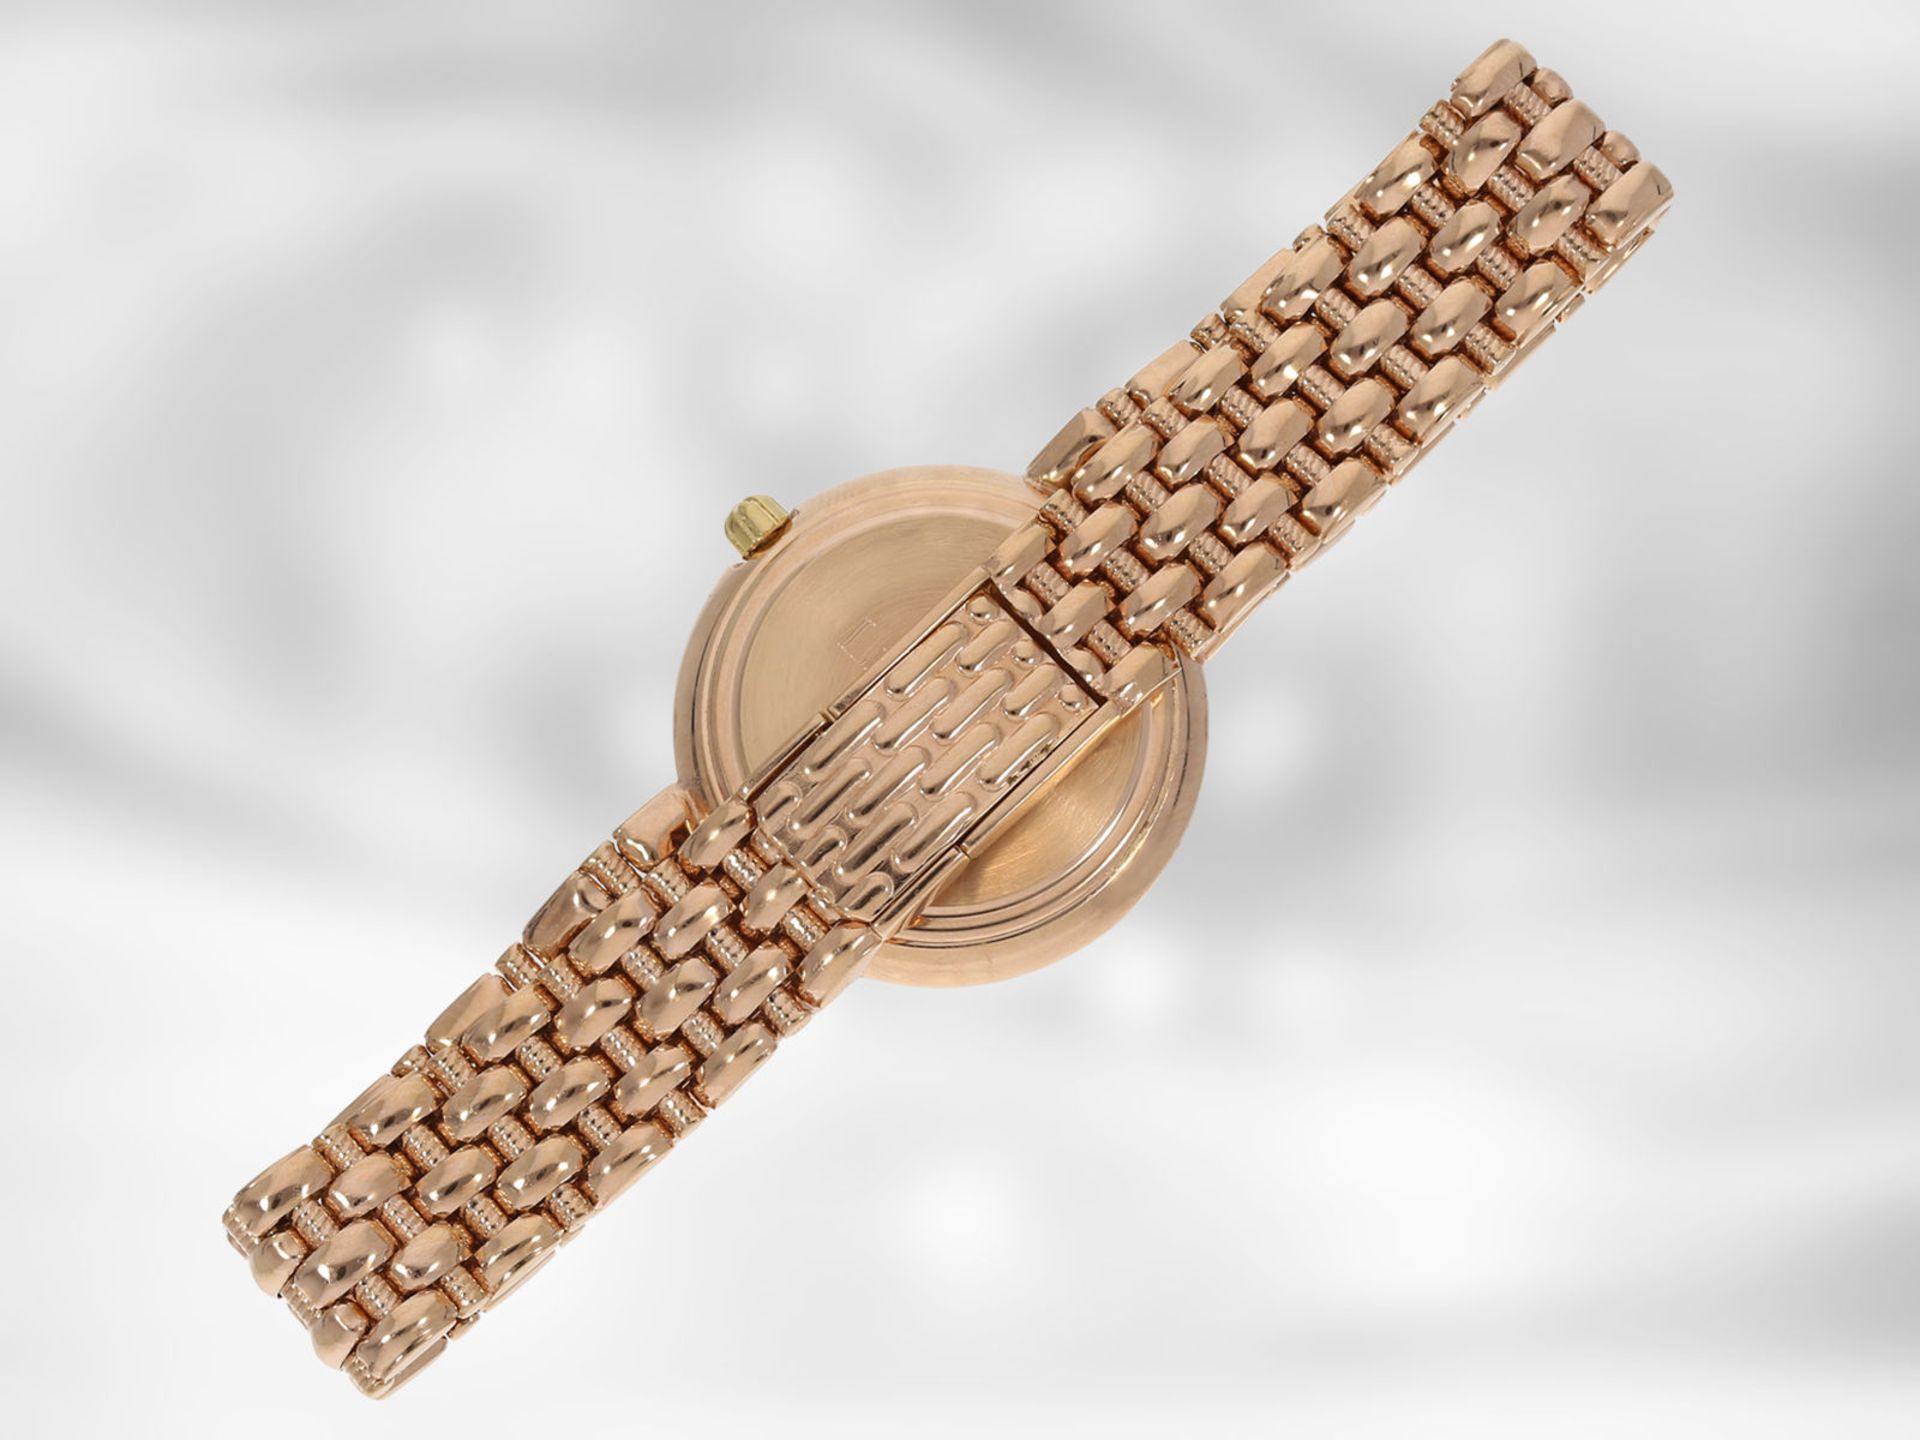 Armbanduhr: hochwertige rotgoldene Schmuckuhr mit Brillantbesatz, insgesamt ca. 0,24ct, 14K - Image 3 of 4